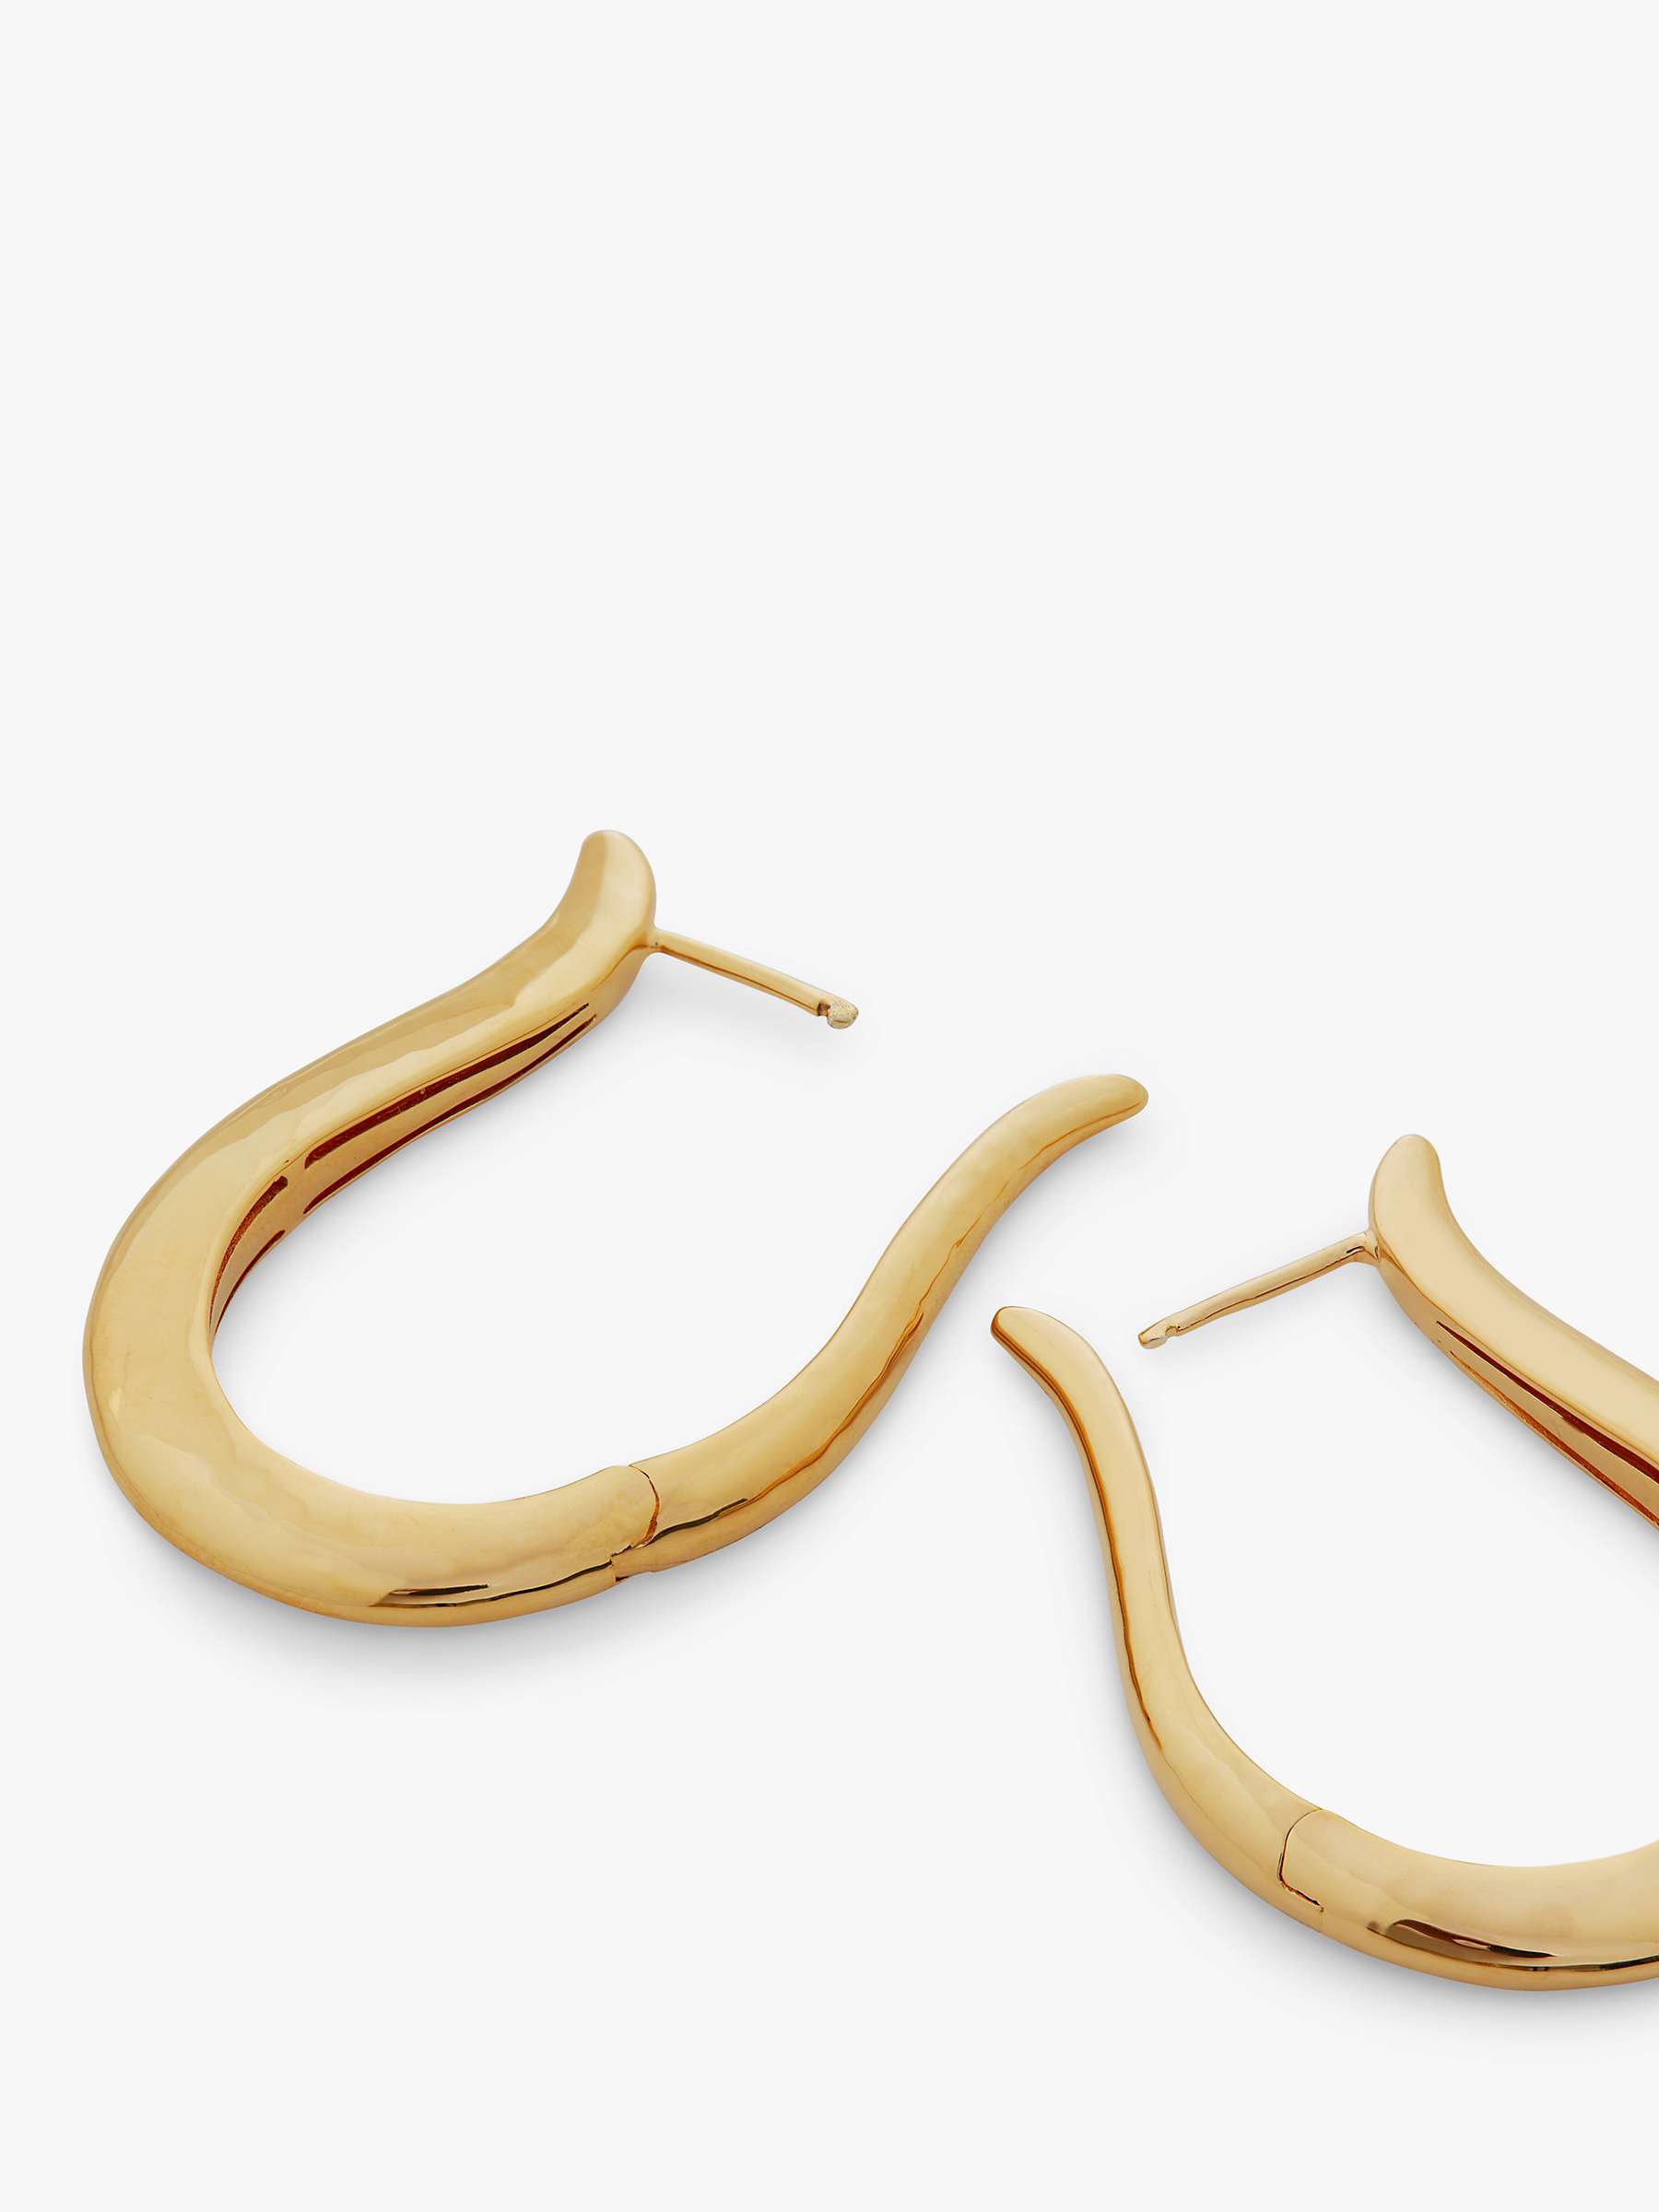 Monica Vinader Deia Lyre Large Hoop Earrings, Gold at John Lewis & Partners